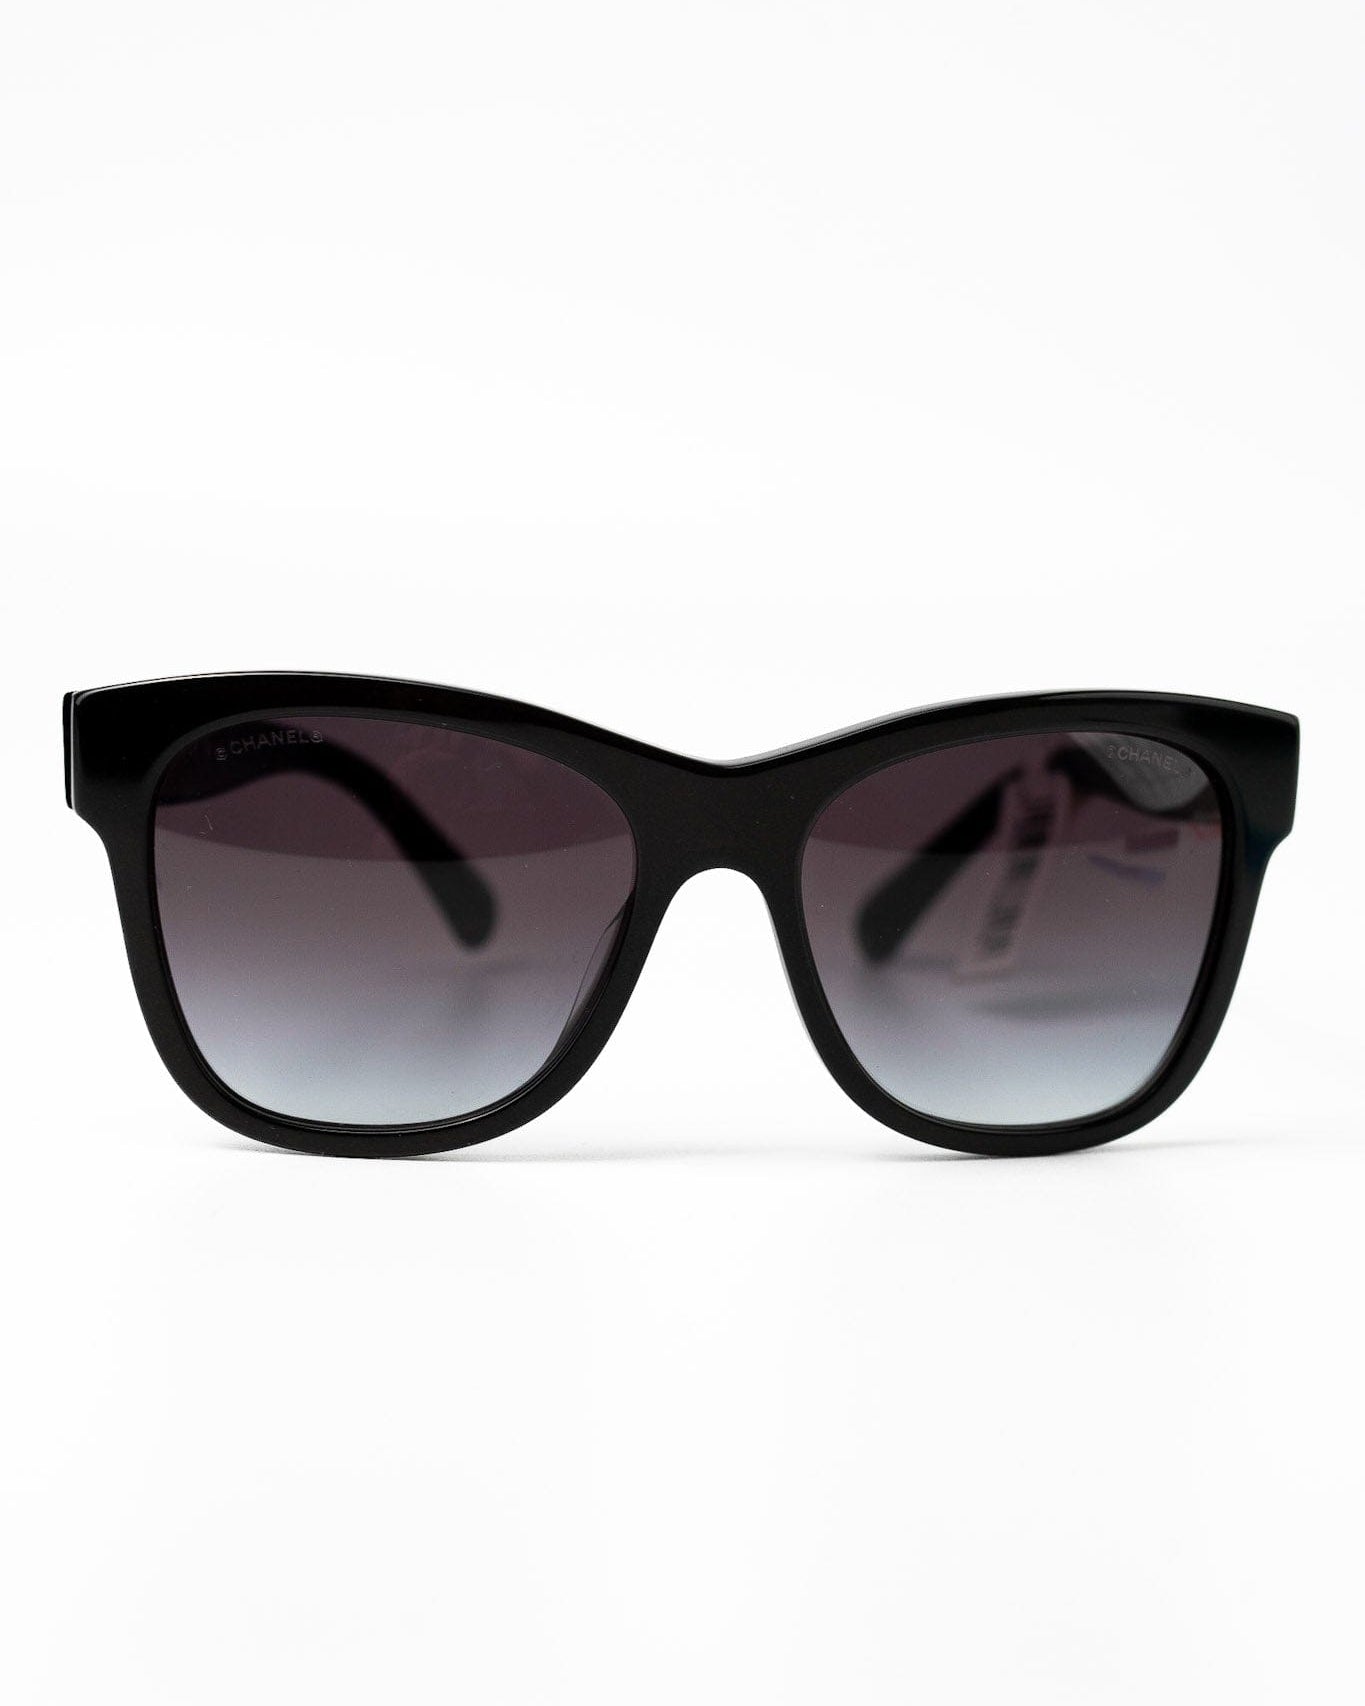 CHANEL Sunglasses Black Black CC Sunglasses 5380-A - Redeluxe